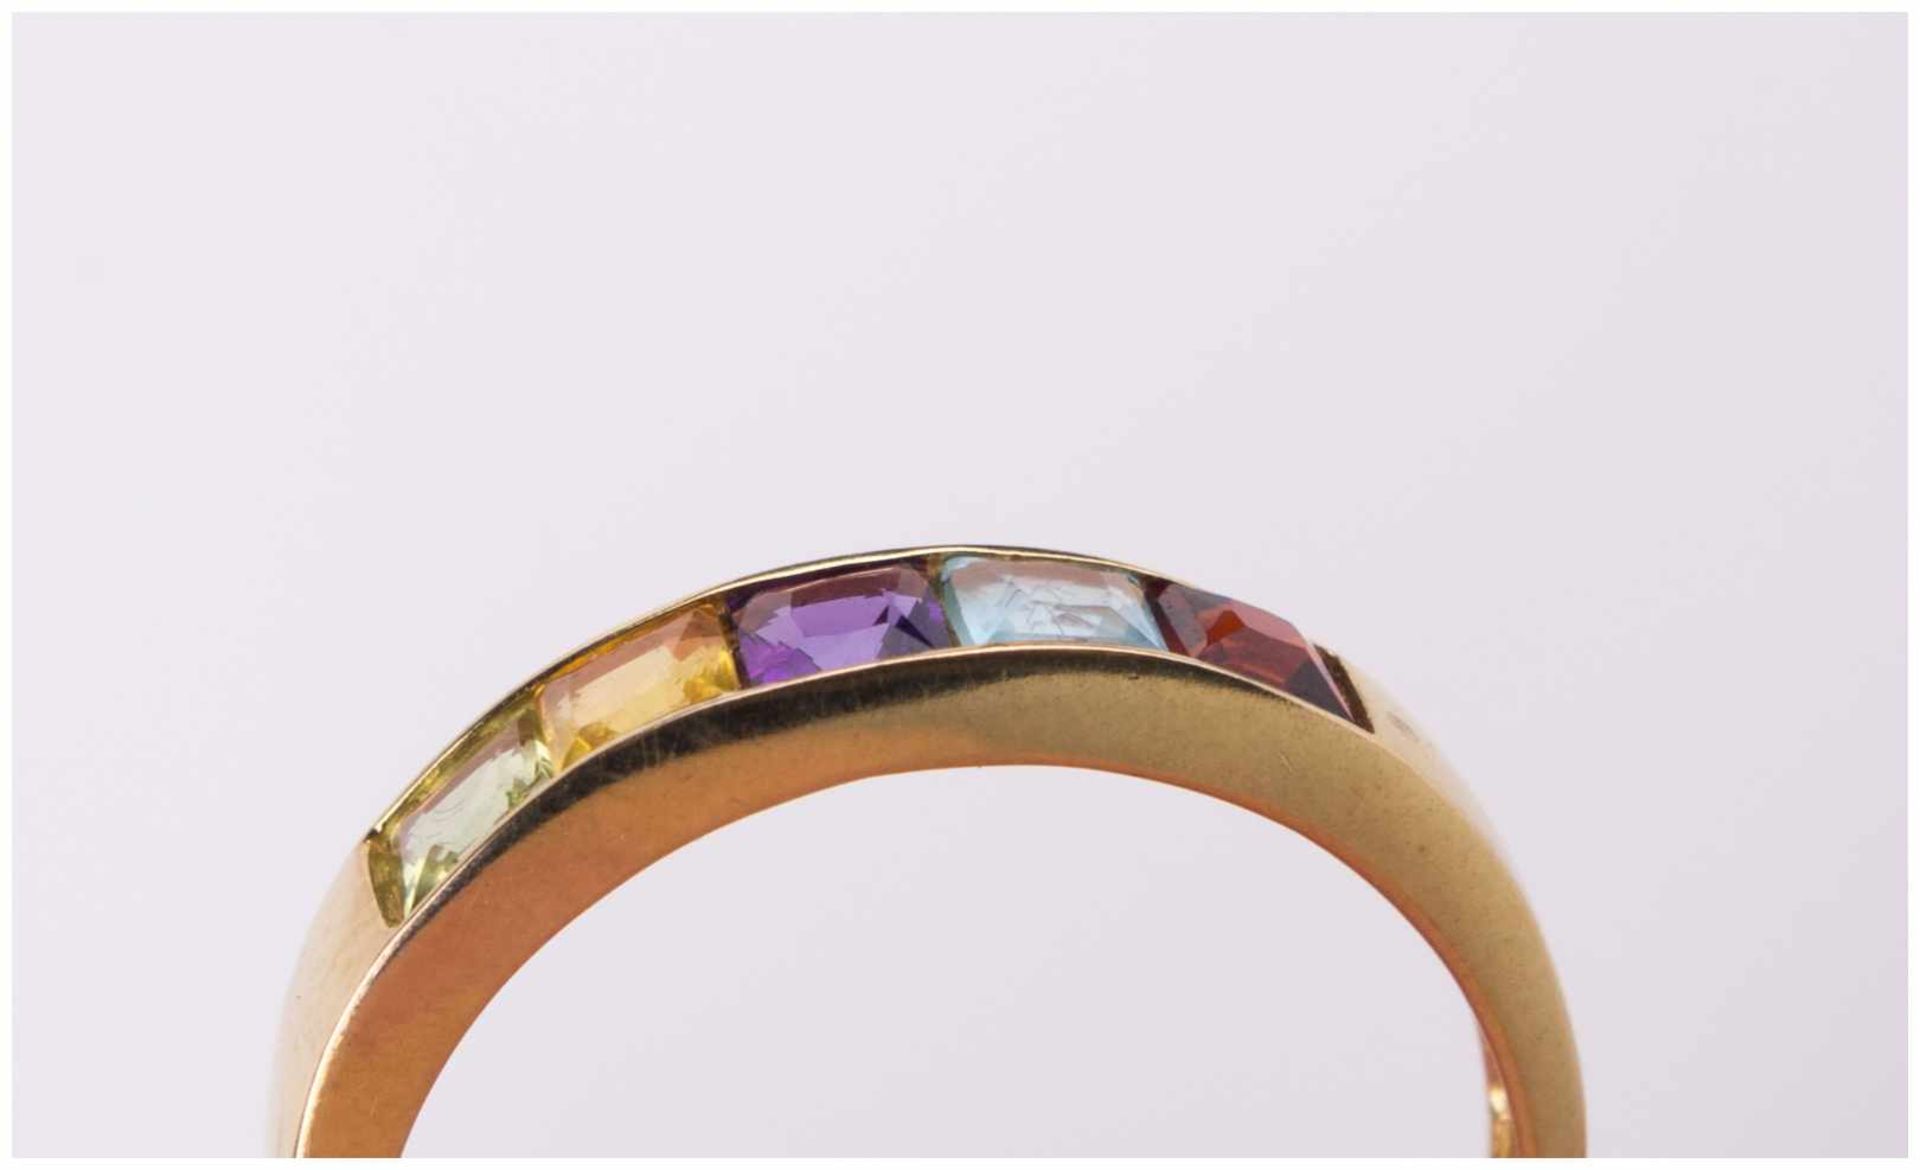 Granat-Amethist Ring / Garnet-Amethyst gold ring - GG 375/000, Gesamtgewicht ca. 1,8 [...] - Image 8 of 10